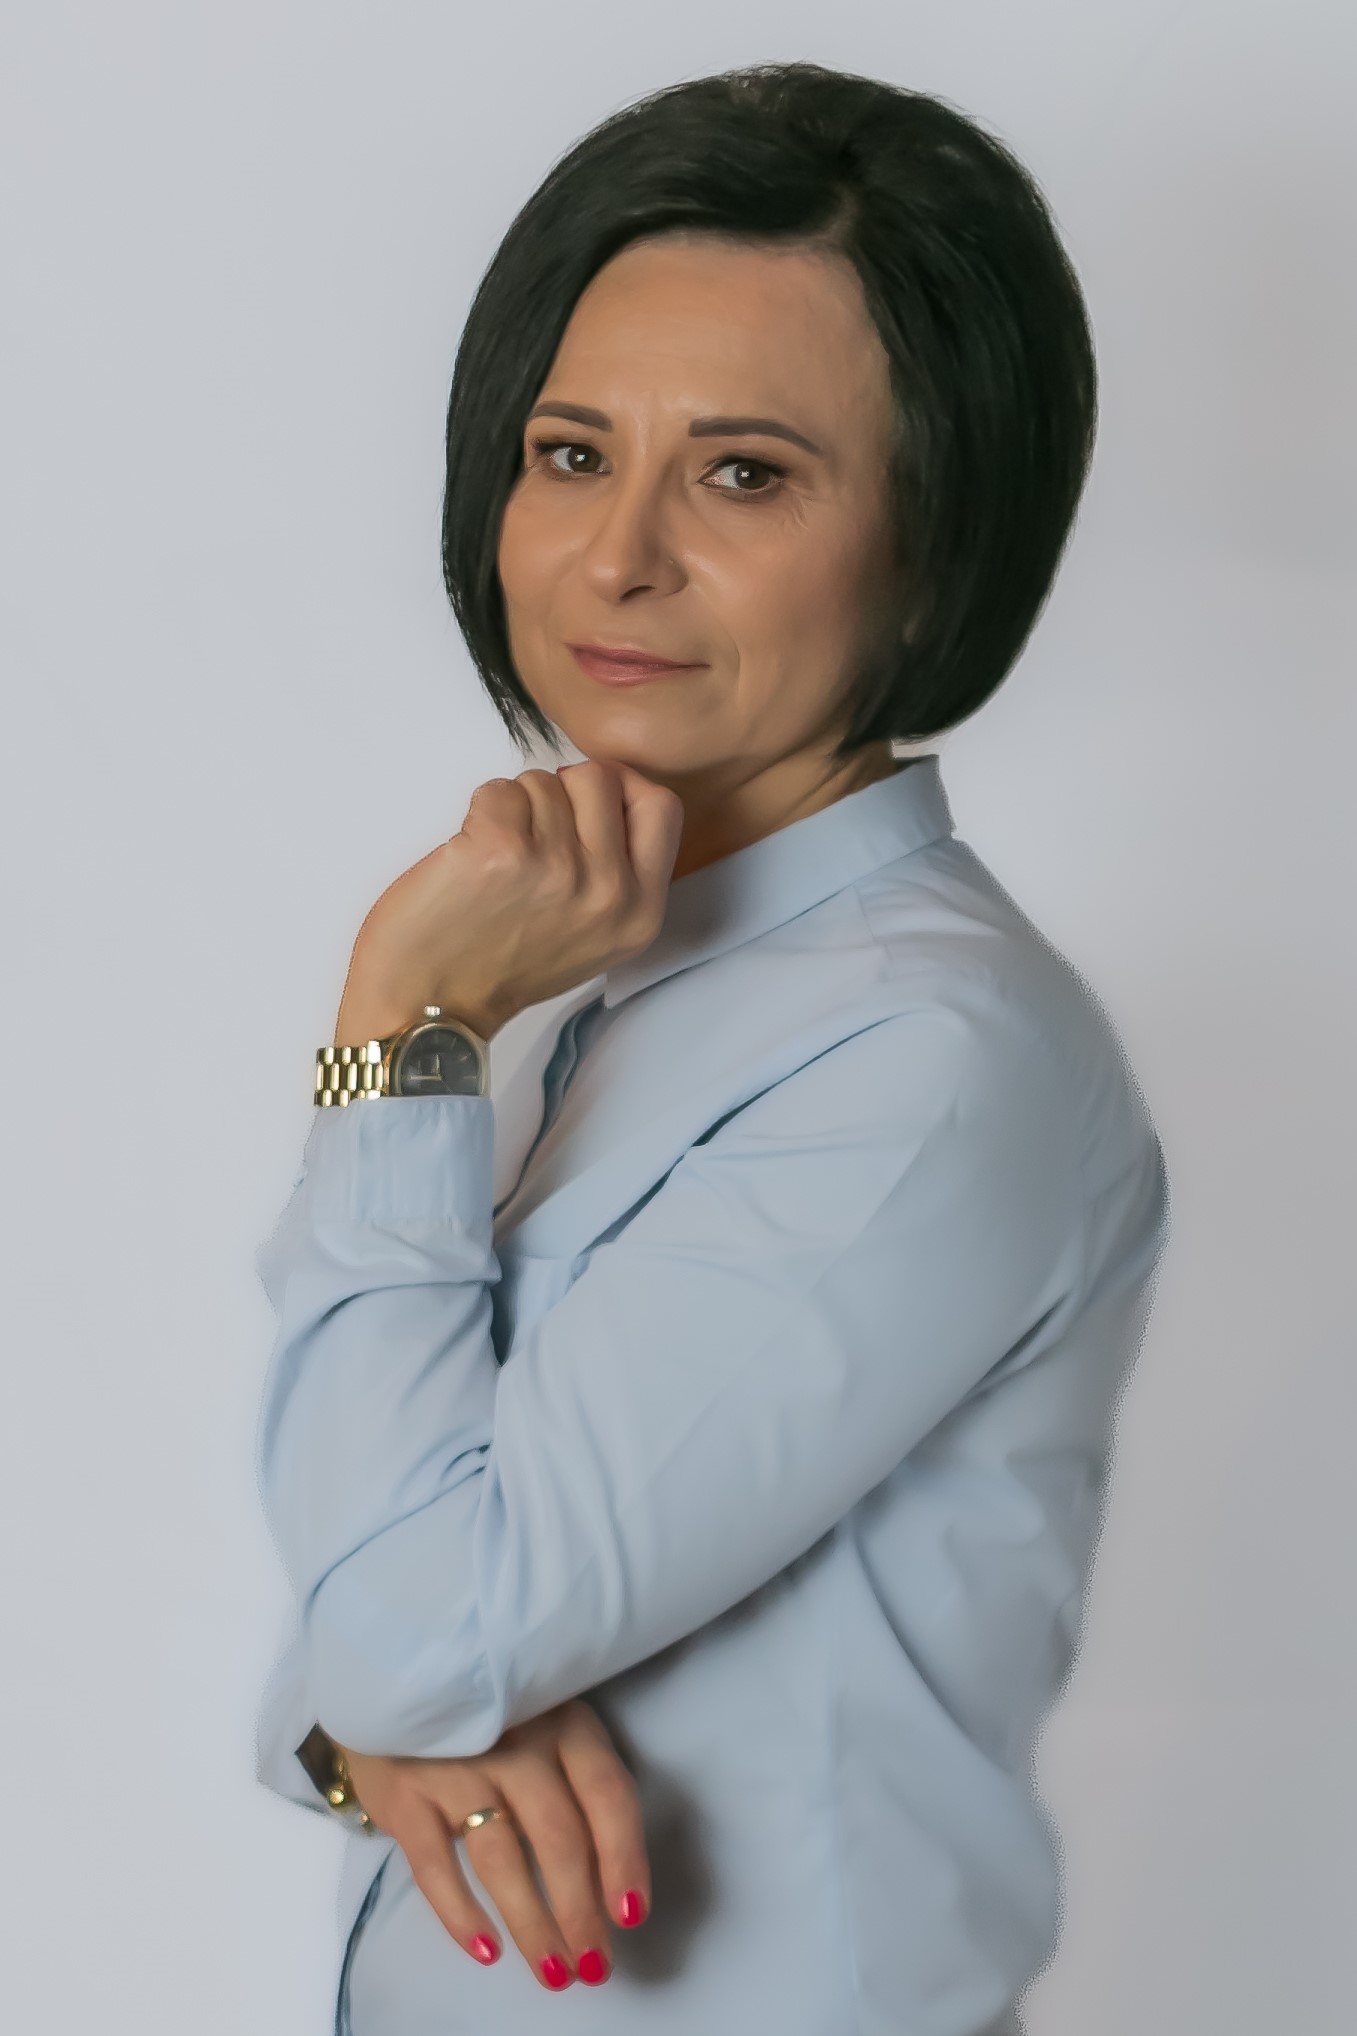 Justyna Zakrzewska